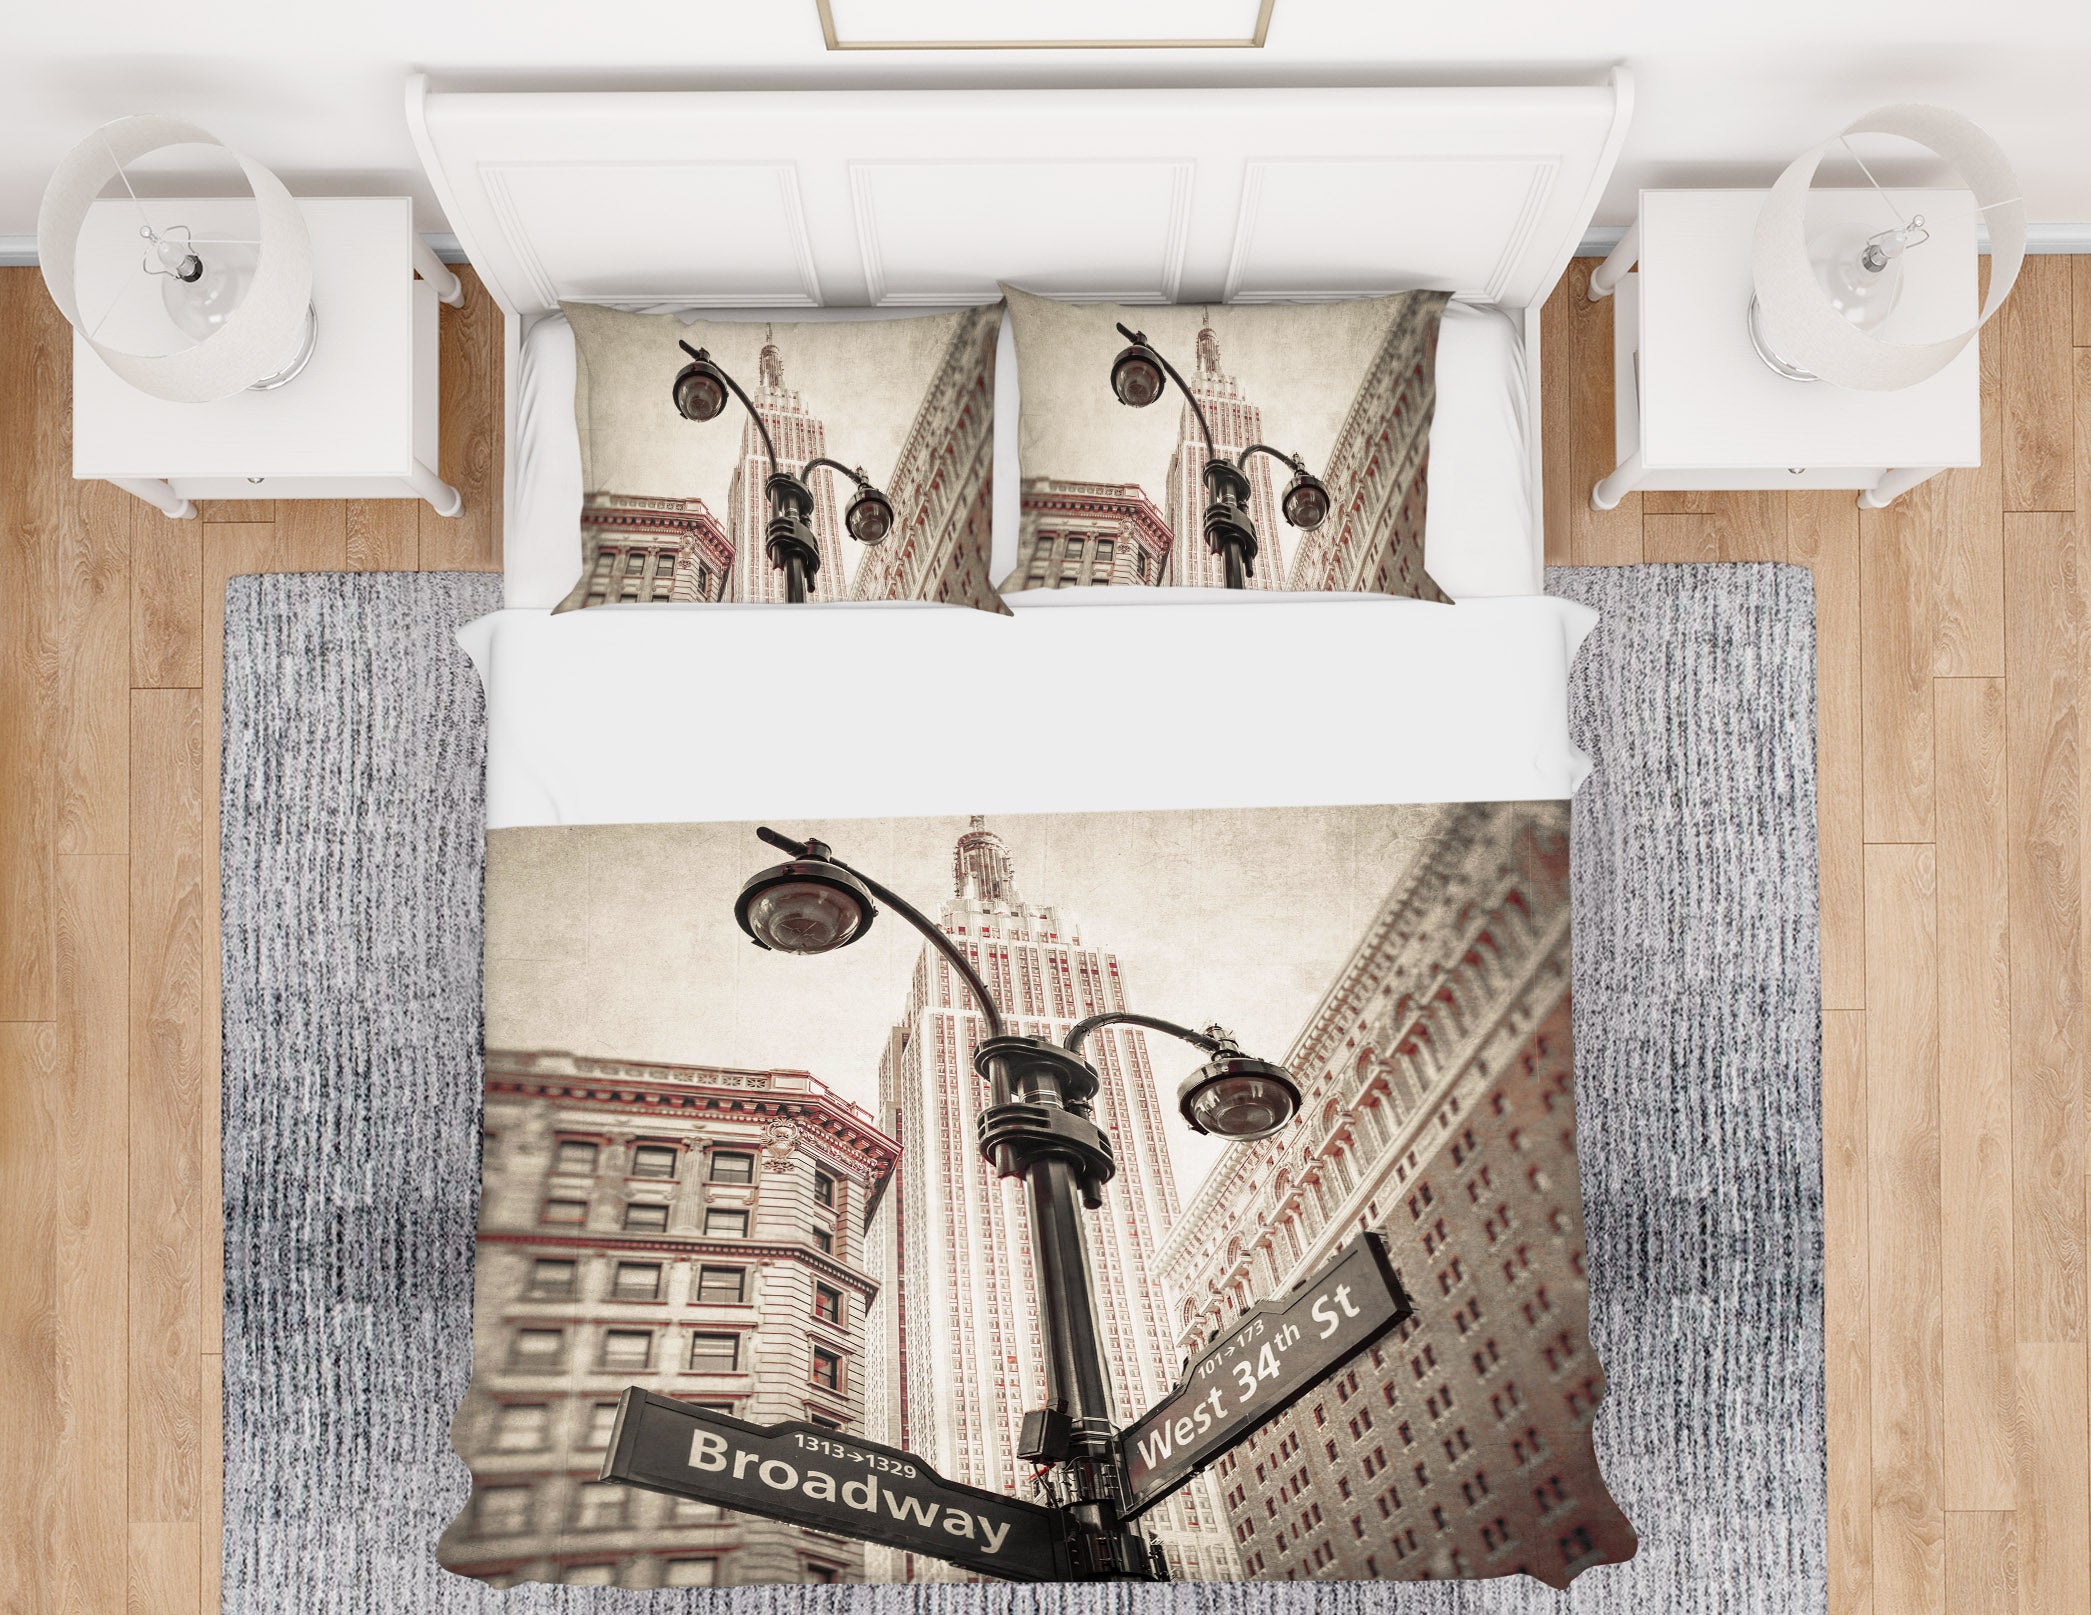 3D Street Sign 85199 Assaf Frank Bedding Bed Pillowcases Quilt